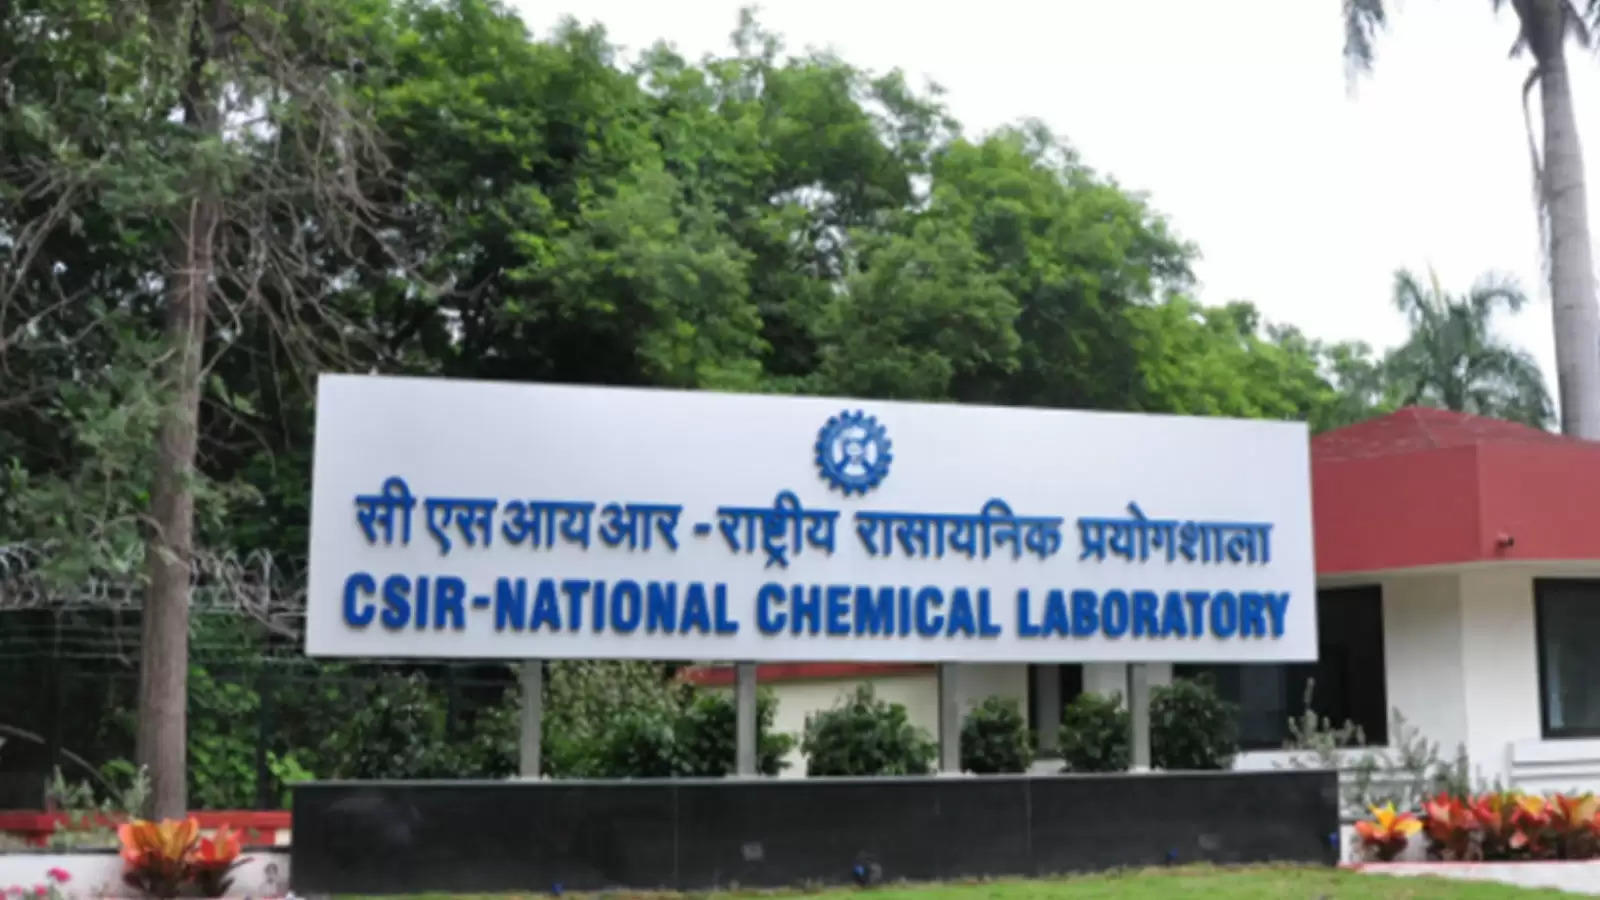 NCL Recruitment 2023: राष्ट्रीय रासायनिक प्रयोगशाला (National Chemical Laboratory) में नौकरी (Sarkari Naukri) पाने का एक शानदार अवसर निकला है। NCLने परियोजना सहयोगी   के पदों (NCL Recruitment 2023) को भरने के लिए आवेदन मांगे हैं। इच्छुक एवं योग्य उम्मीदवार जो इन रिक्त पदों (NCL Recruitment 2023) के लिए आवेदन करना चाहते हैं, वे NCLकी आधिकारिक वेबसाइट ncl-india.org पर जाकर अप्लाई कर सकते हैं। इन पदों (NCL Recruitment 2023) के लिए अप्लाई करने की अंतिम तिथि 9 जनवरी 2023 है।   इसके अलावा उम्मीदवार सीधे इस आधिकारिक लिंक ncl-india.org पर क्लिक करके भी इन पदों (NCL Recruitment 2023) के लिए अप्लाई कर सकते हैं।   अगर आपको इस भर्ती से जुड़ी और डिटेल जानकारी चाहिए, तो आप इस लिंक NCL Recruitment 2023 Notification PDF के जरिए आधिकारिक नोटिफिकेशन (NCL Recruitment 2023) को देख और डाउनलोड कर सकते हैं। इस भर्ती (NCL Recruitment 2023) प्रक्रिया के तहत कुल 1 पद को भरा जाएगा।   NCL Recruitment 2023 के लिए महत्वपूर्ण तिथियां ऑनलाइन आवेदन शुरू होने की तारीख – ऑनलाइन आवेदन करने की आखरी तारीख – 9 जनवरी 2023 लोकेशन- पुणे NCL Recruitment 2023 के लिए पदों का  विवरण पदों की कुल संख्या- परियोजना सहयोगी    -  1 पद NCL Recruitment 2023 के लिए योग्यता (Eligibility Criteria) वरिष्ठ परियोजना सहयोगी   - मान्यता प्राप्त संस्थान से  कैमिस्ट्री में स्नातकोत्तर डिग्री पास हो और अनुभव हो NCL Recruitment 2023 के लिए उम्र सीमा (Age Limit) वरिष्ठ परियोजना सहयोगी   – 35 वर्ष NCL Recruitment 2023 के लिए वेतन (Salary) परियोजना सहयोगी  : 31000/- NCL Recruitment 2023 के लिए चयन प्रक्रिया (Selection Process) परियोजना सहयोगी    - लिखित परीक्षा के आधार पर किया जाएगा। NCL Recruitment 2023 के लिए आवेदन कैसे करें इच्छुक और योग्य उम्मीदवार NCLकी आधिकारिक वेबसाइट (ncl-india.org) के माध्यम से  9 जनवरी 2023 तक आवेदन कर सकते हैं। इस सबंध में विस्तृत जानकारी के लिए आप ऊपर दिए गए आधिकारिक अधिसूचना को देखें। यदि आप सरकारी नौकरी पाना चाहते है, तो अंतिम तिथि निकलने से पहले इस भर्ती के लिए अप्लाई करें और अपना सरकारी नौकरी पाने का सपना पूरा करें। इस तरह की और लेटेस्ट सरकारी नौकरियों की जानकारी के लिए आप naukrinama.com पर जा सकते है। NCL Recruitment 2023: A great opportunity has emerged to get a job in the National Chemical Laboratory (Sarkari Naukri). NCL has sought applications to fill the posts of Project Associate (NCL Recruitment 2023). Interested and eligible candidates who want to apply for these vacant posts (NCL Recruitment 2023), they can apply by visiting the official website of NCL, ncl-india.org. The last date to apply for these posts (NCL Recruitment 2023) is 9 January 2023. Apart from this, candidates can also apply for these posts (NCL Recruitment 2023) directly by clicking on this official link ncl-india.org. If you want more detailed information related to this recruitment, then you can see and download the official notification (NCL Recruitment 2023) through this link NCL Recruitment 2023 Notification PDF. A total of 1 post will be filled under this recruitment (NCL Recruitment 2023) process. Important Dates for NCL Recruitment 2023 Online Application Starting Date – Last date for online application – 9 January 2023 Location- Pune Details of posts for NCL Recruitment 2023 Total No. of Posts - Project Associate - 1 Post Eligibility Criteria for NCL Recruitment 2023 Project Associate - Post Graduate Degree in Chemistry from recognized Institute with experience Age Limit for NCL Recruitment 2023 Project Associate – 35 Years Salary for NCL Recruitment 2023 Project Associate : 31000/- Selection Process for NCL Recruitment 2023 Project Associate - Will be done on the basis of written test. How to apply for NCL Recruitment 2023 Interested and eligible candidates can apply through the official website of NCL (ncl-india.org) by 9 January 2023. For detailed information in this regard, refer to the official notification given above. If you want to get a government job, then apply for this recruitment before the last date and fulfill your dream of getting a government job. You can visit naukrinama.com for more such latest government jobs information.